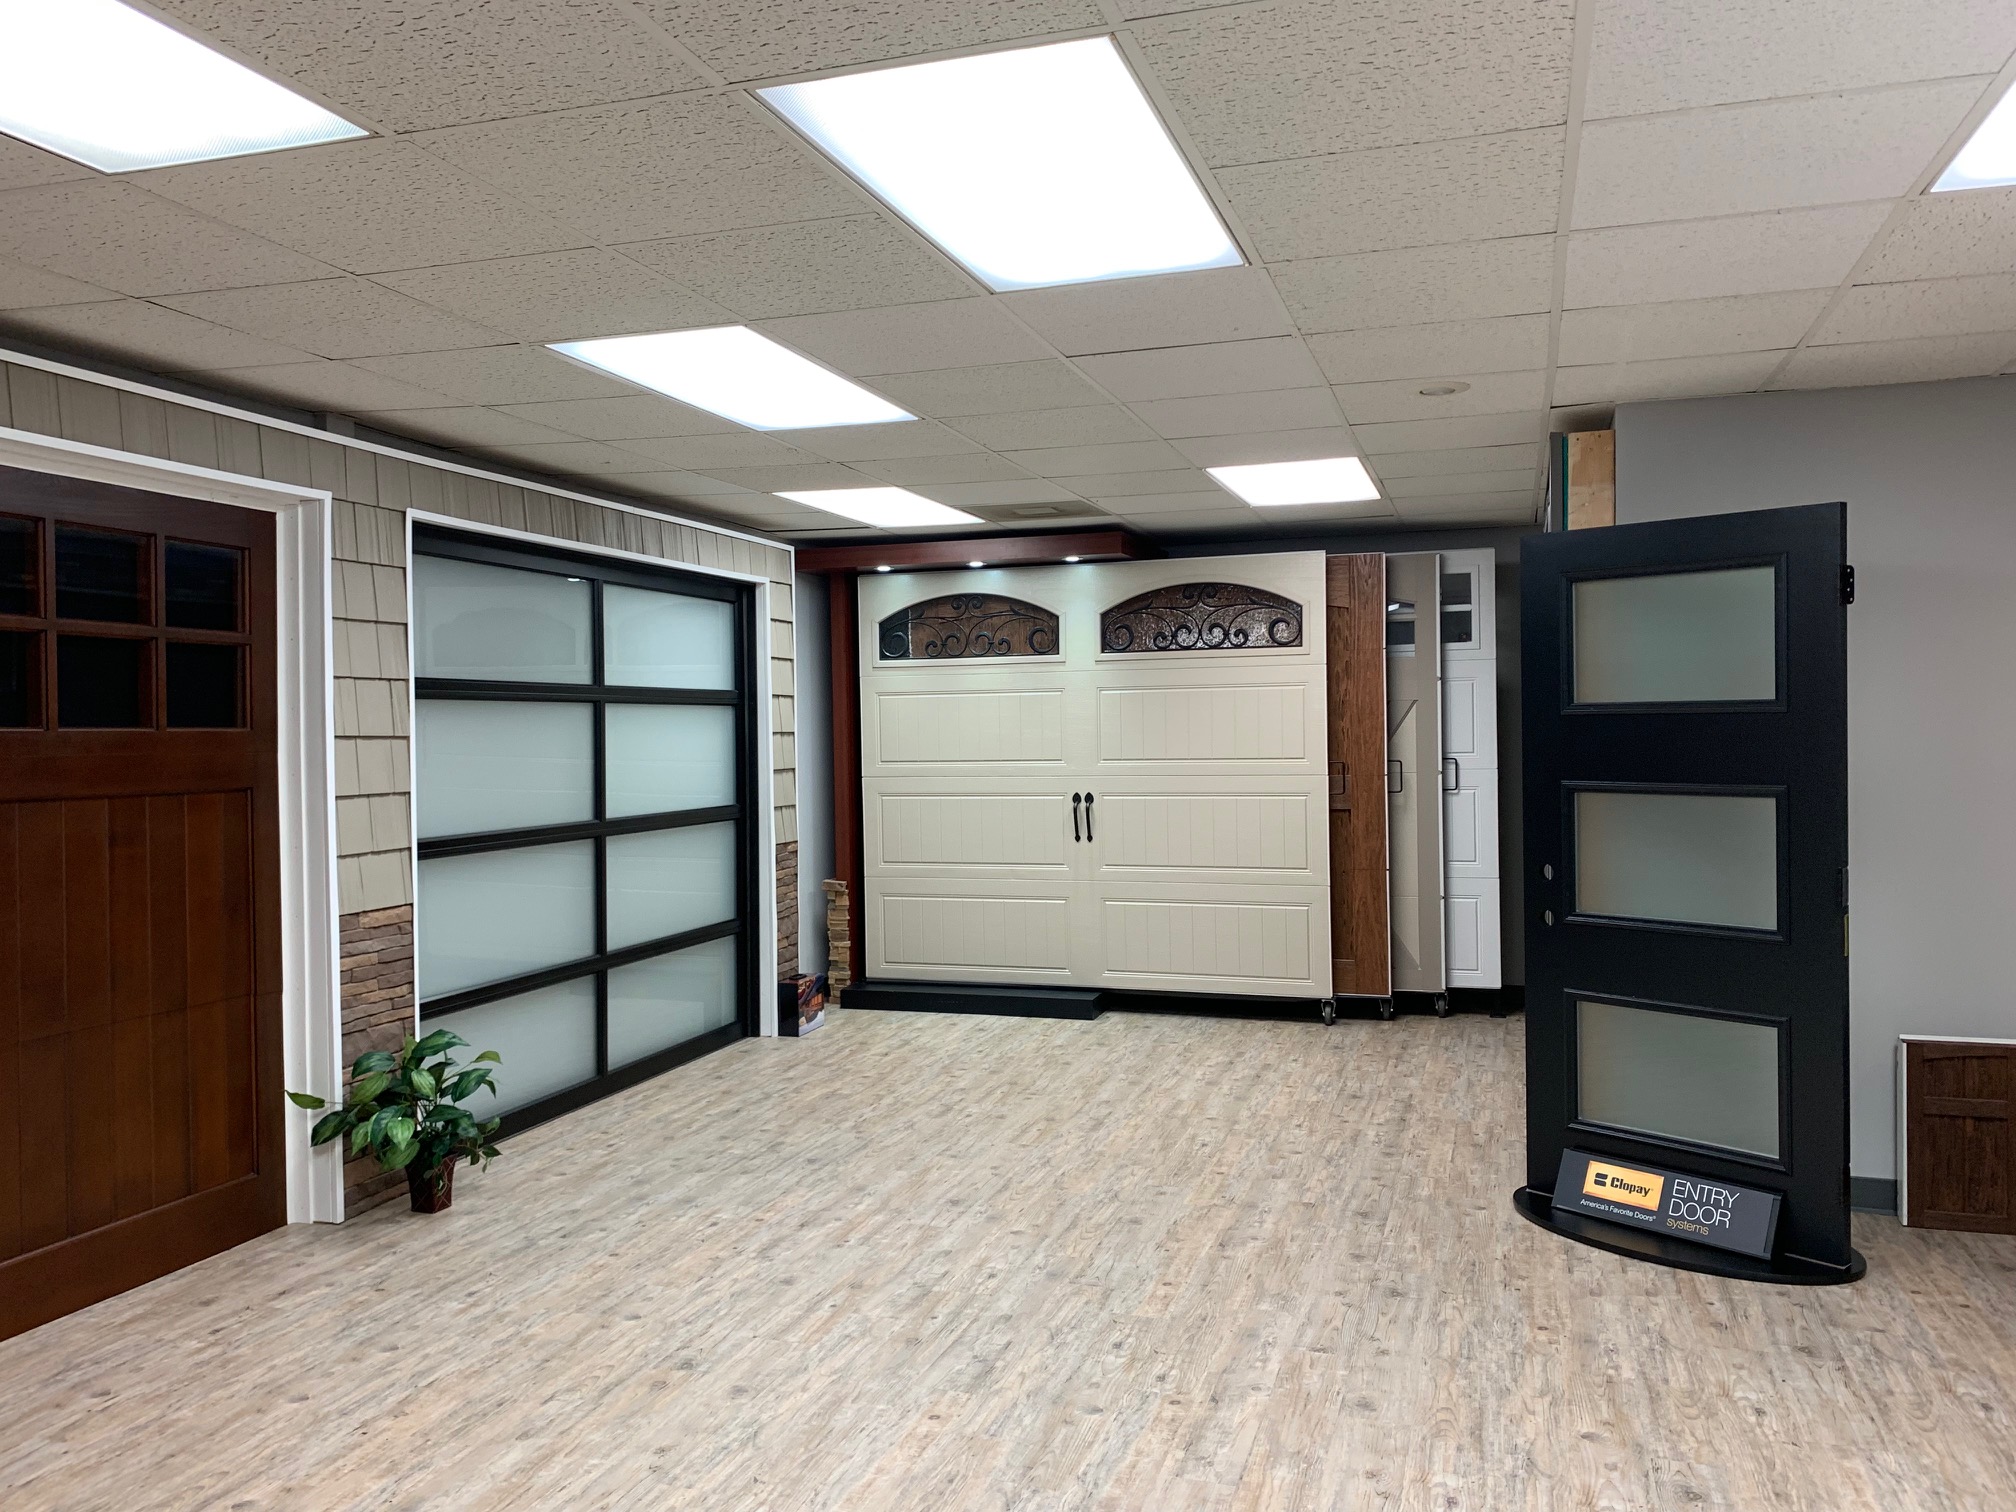 New Garage Door Opener Repair Winston Salem Nc for Living room